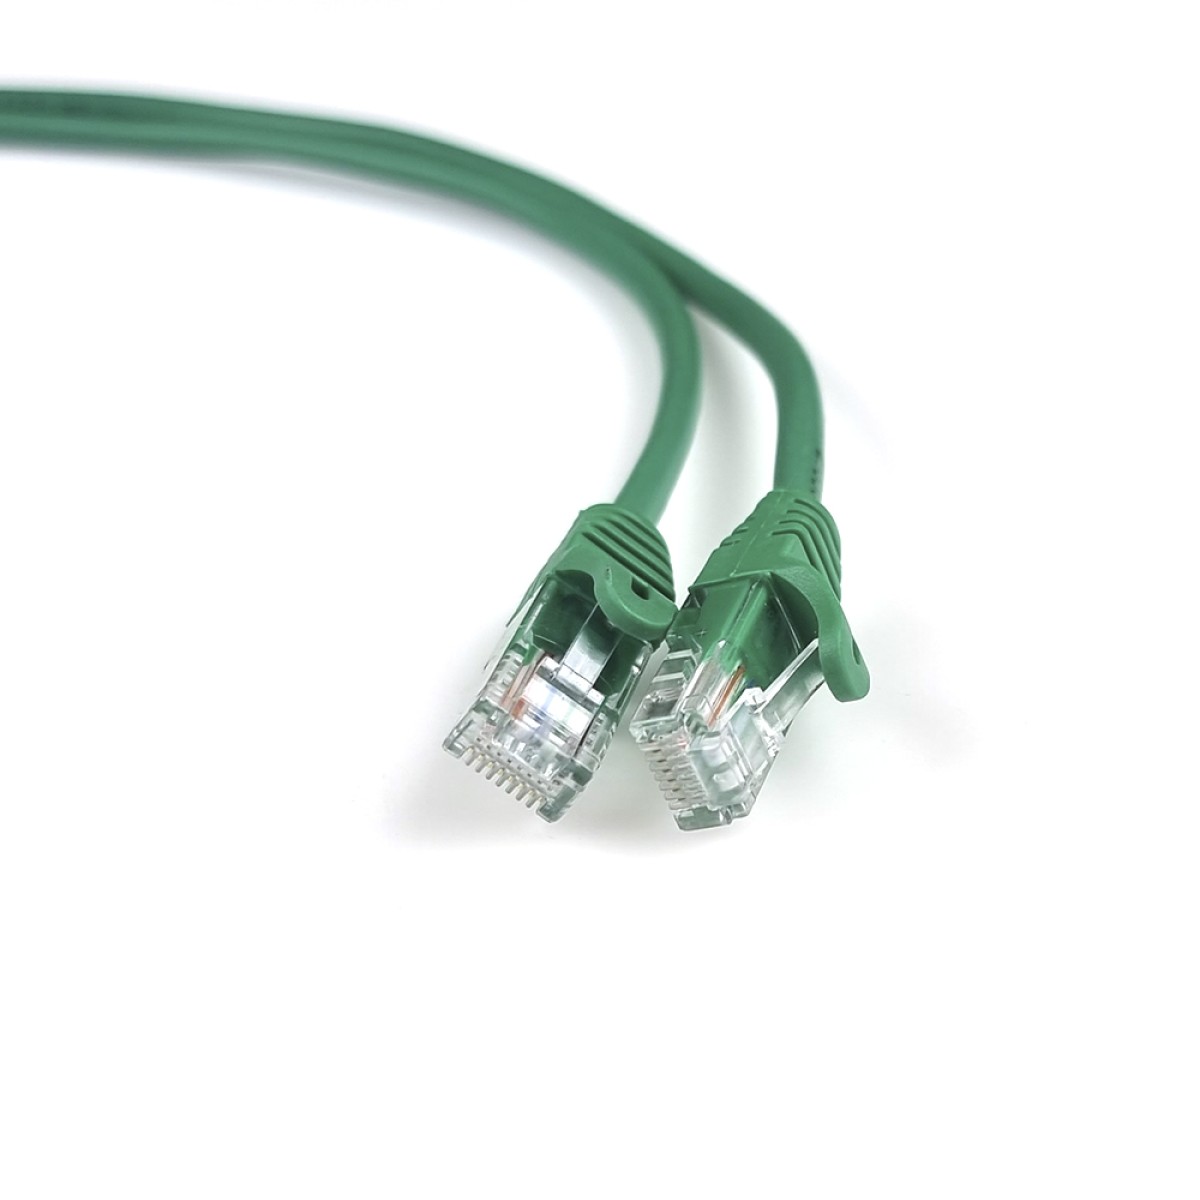 Интернет кабель RJ45 UTP литой зеленый 2м кат. 5Е 98_98.jpg - фото 3